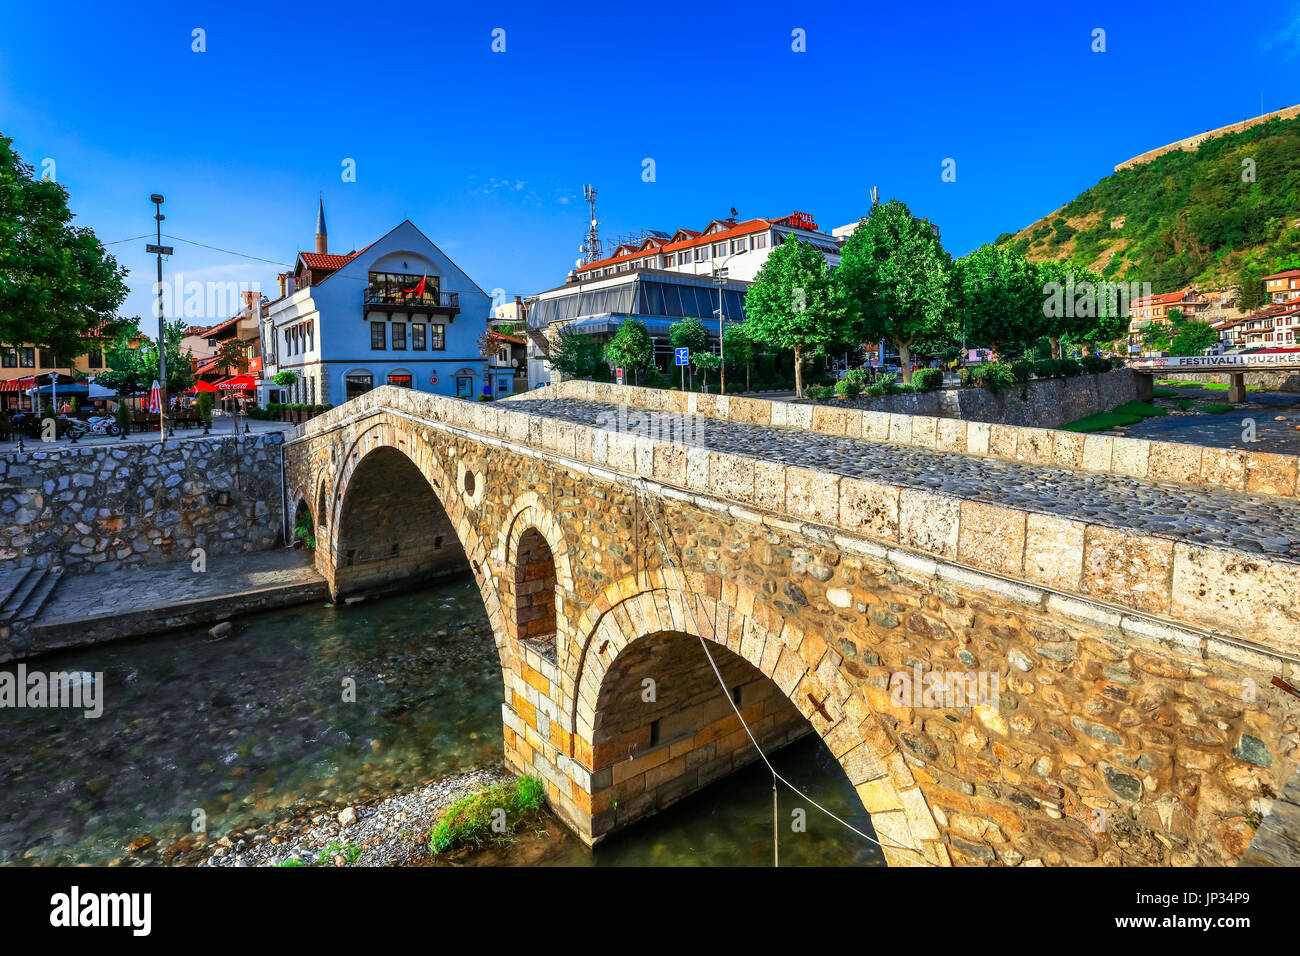 Europa - Kosovo - Prizren - città storica situata sulle rive di Prizren Bistrica river & sulle pendici dei monti Šar - vecchio ponte di pietra - Ura e gurit - С Foto Stock